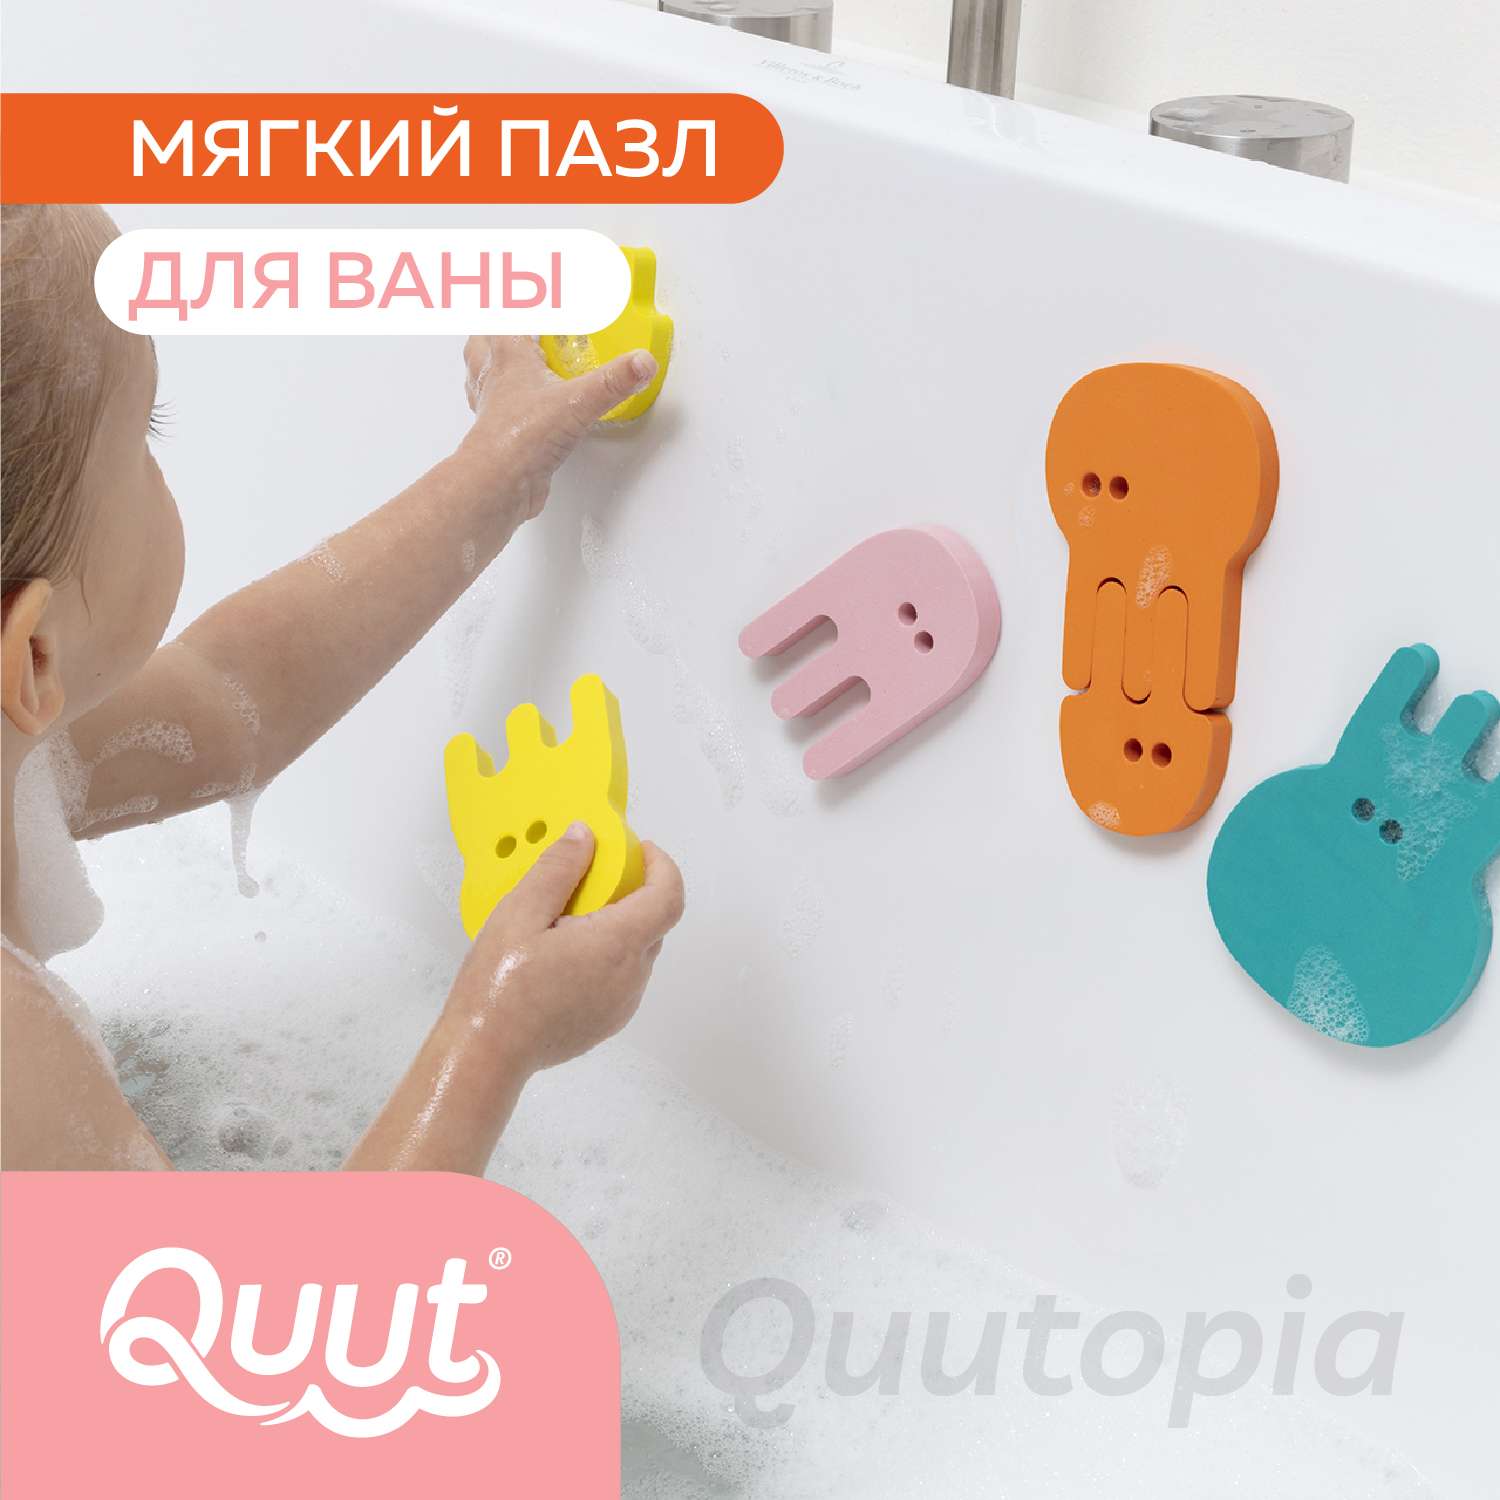 Пазл 2D QUUT мягкий для игры в ванне Quutopia Медузы 10 элементов - фото 2